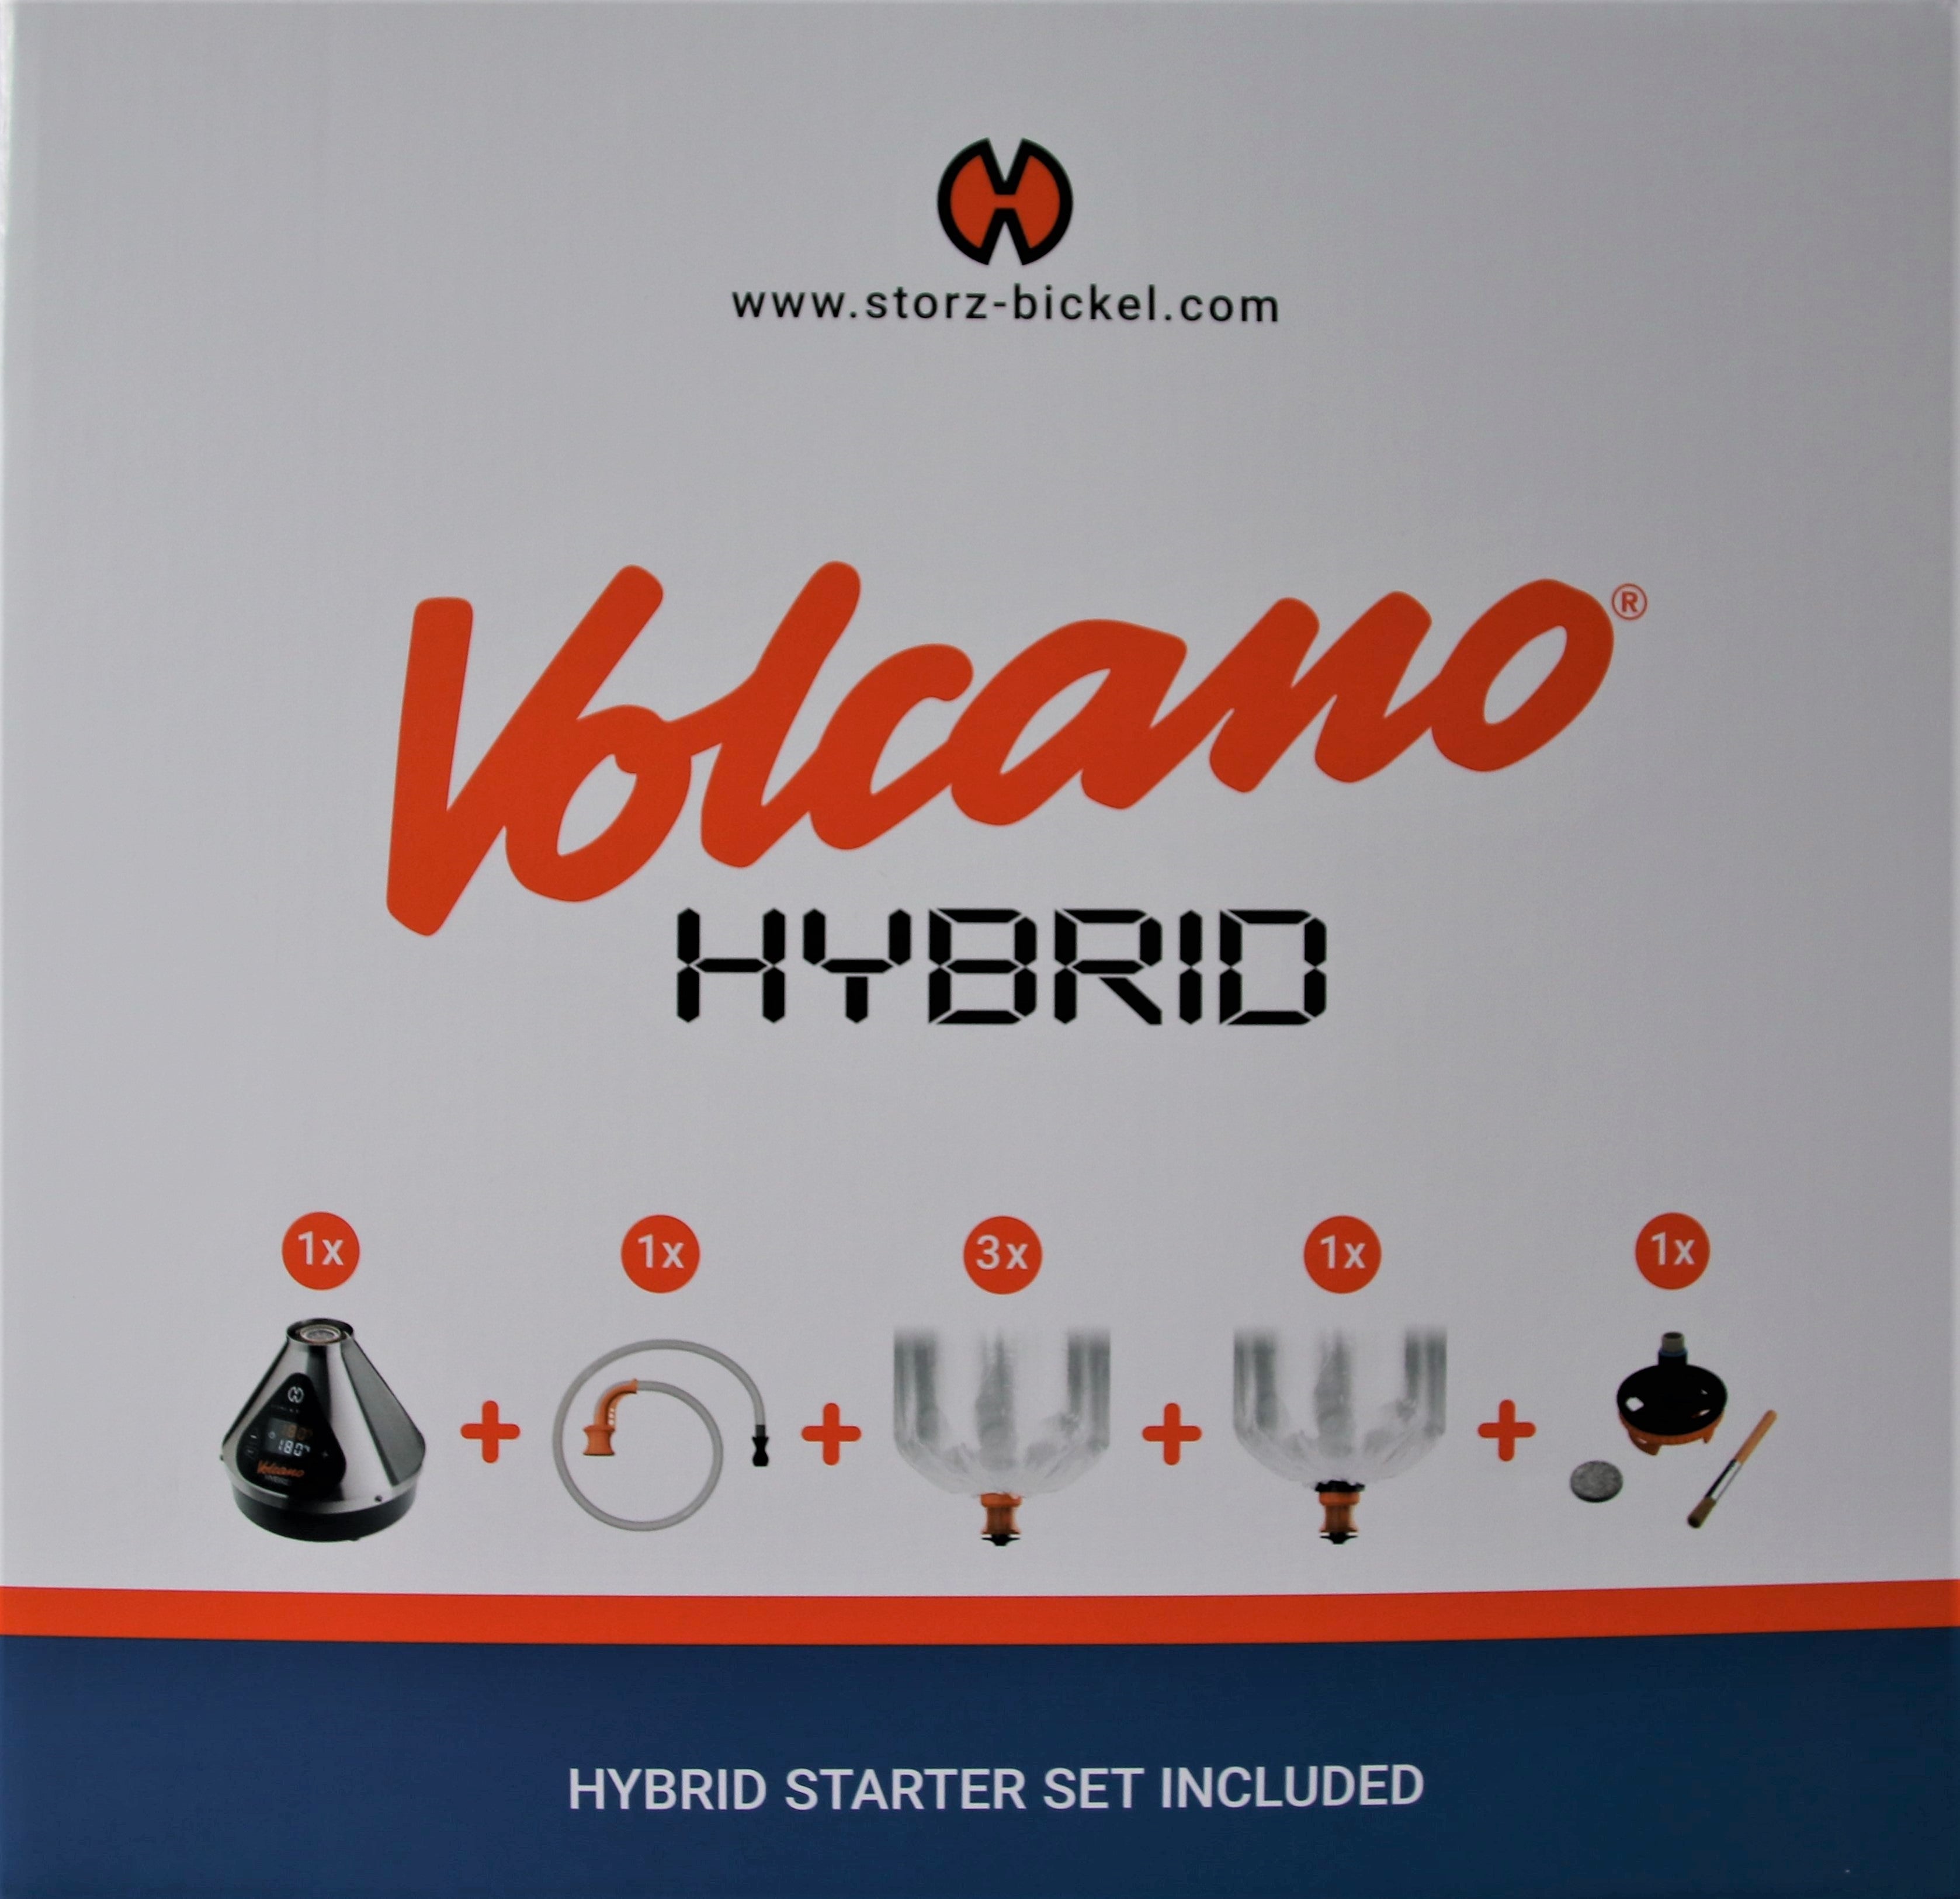 Volcano Hybrid Vaporizer